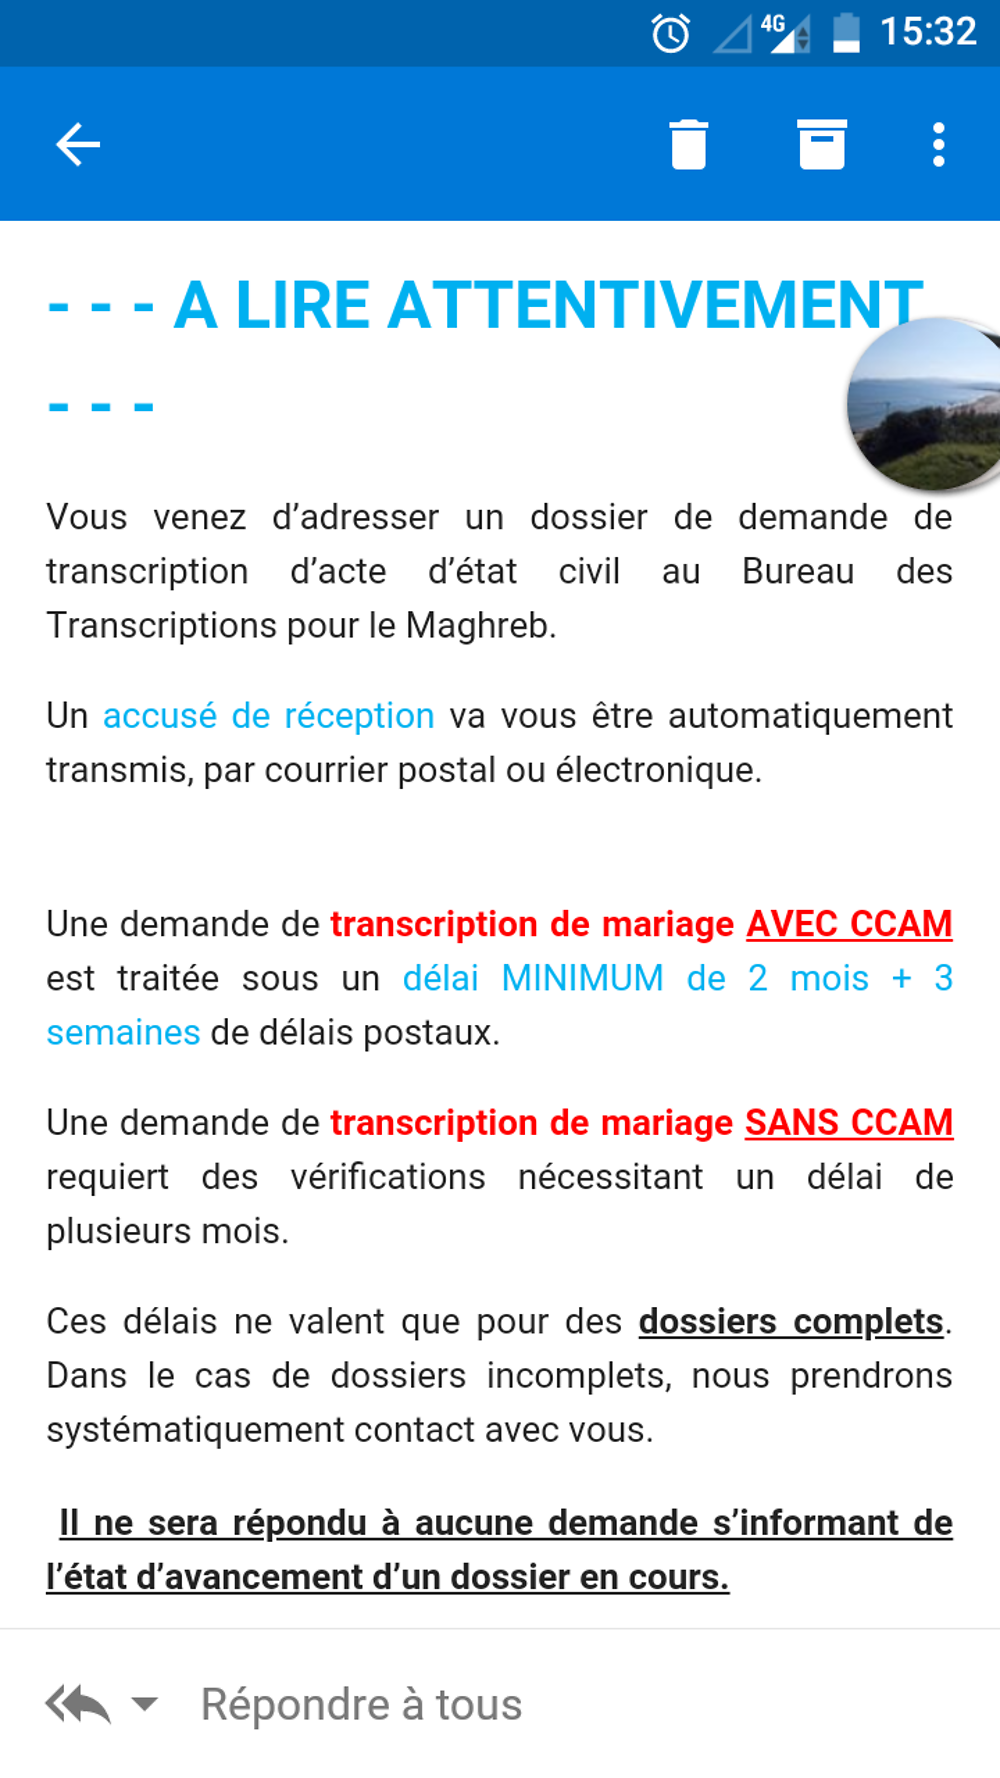 Re: Certificat de capacité à mariage (ccam) - formalités pour se marier en Algerie - bizounourse